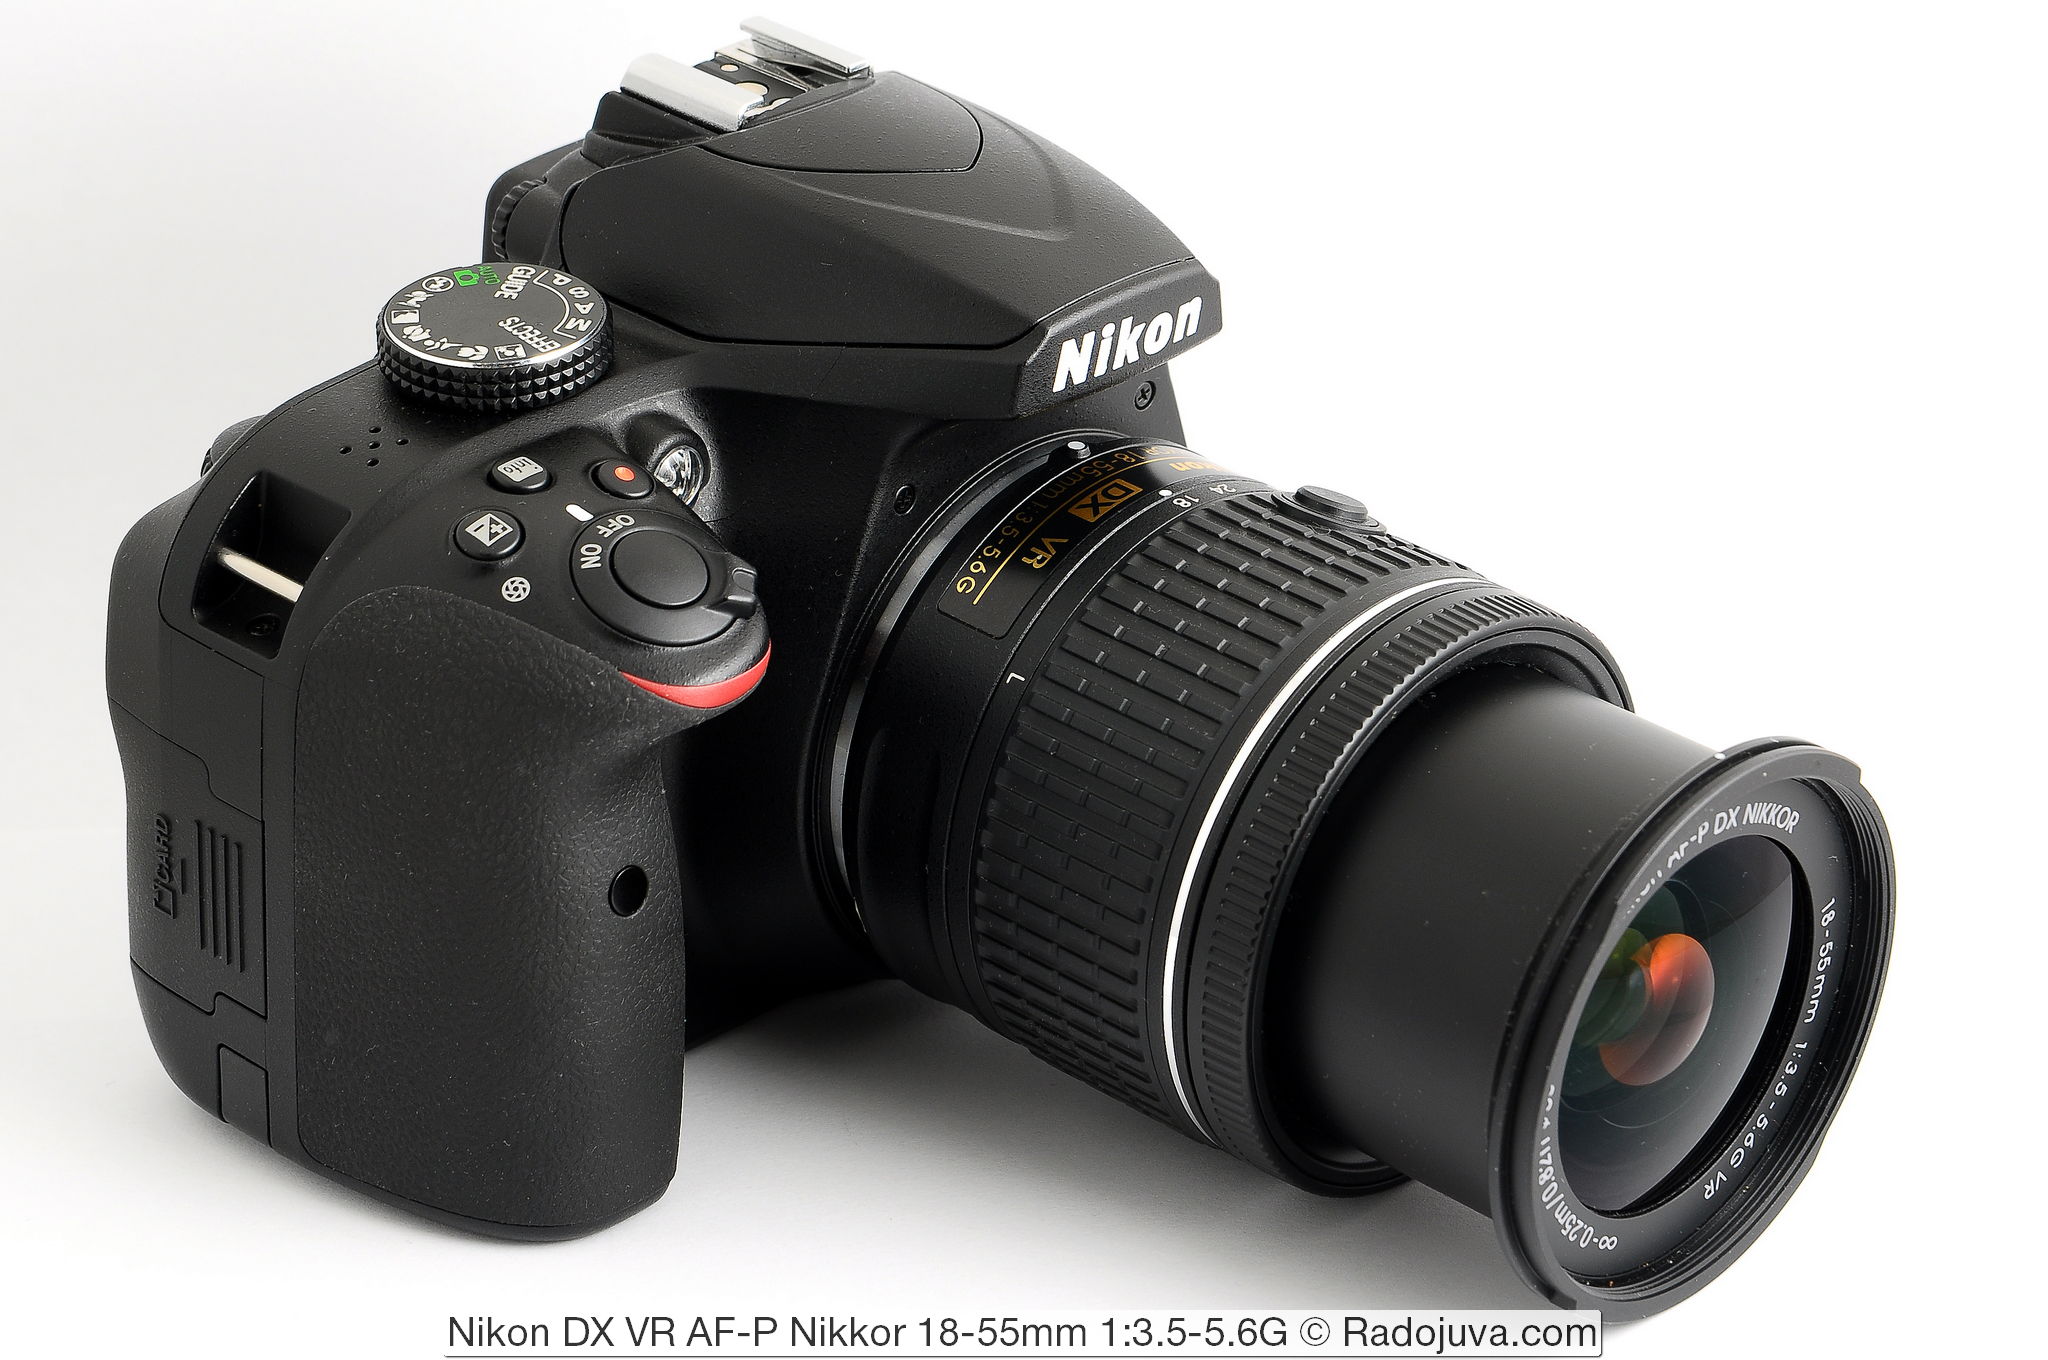 Nikon DX VR AF-P Nikkor 18-55mm 1: 3.5-5.6G en Nikon D3400 camera